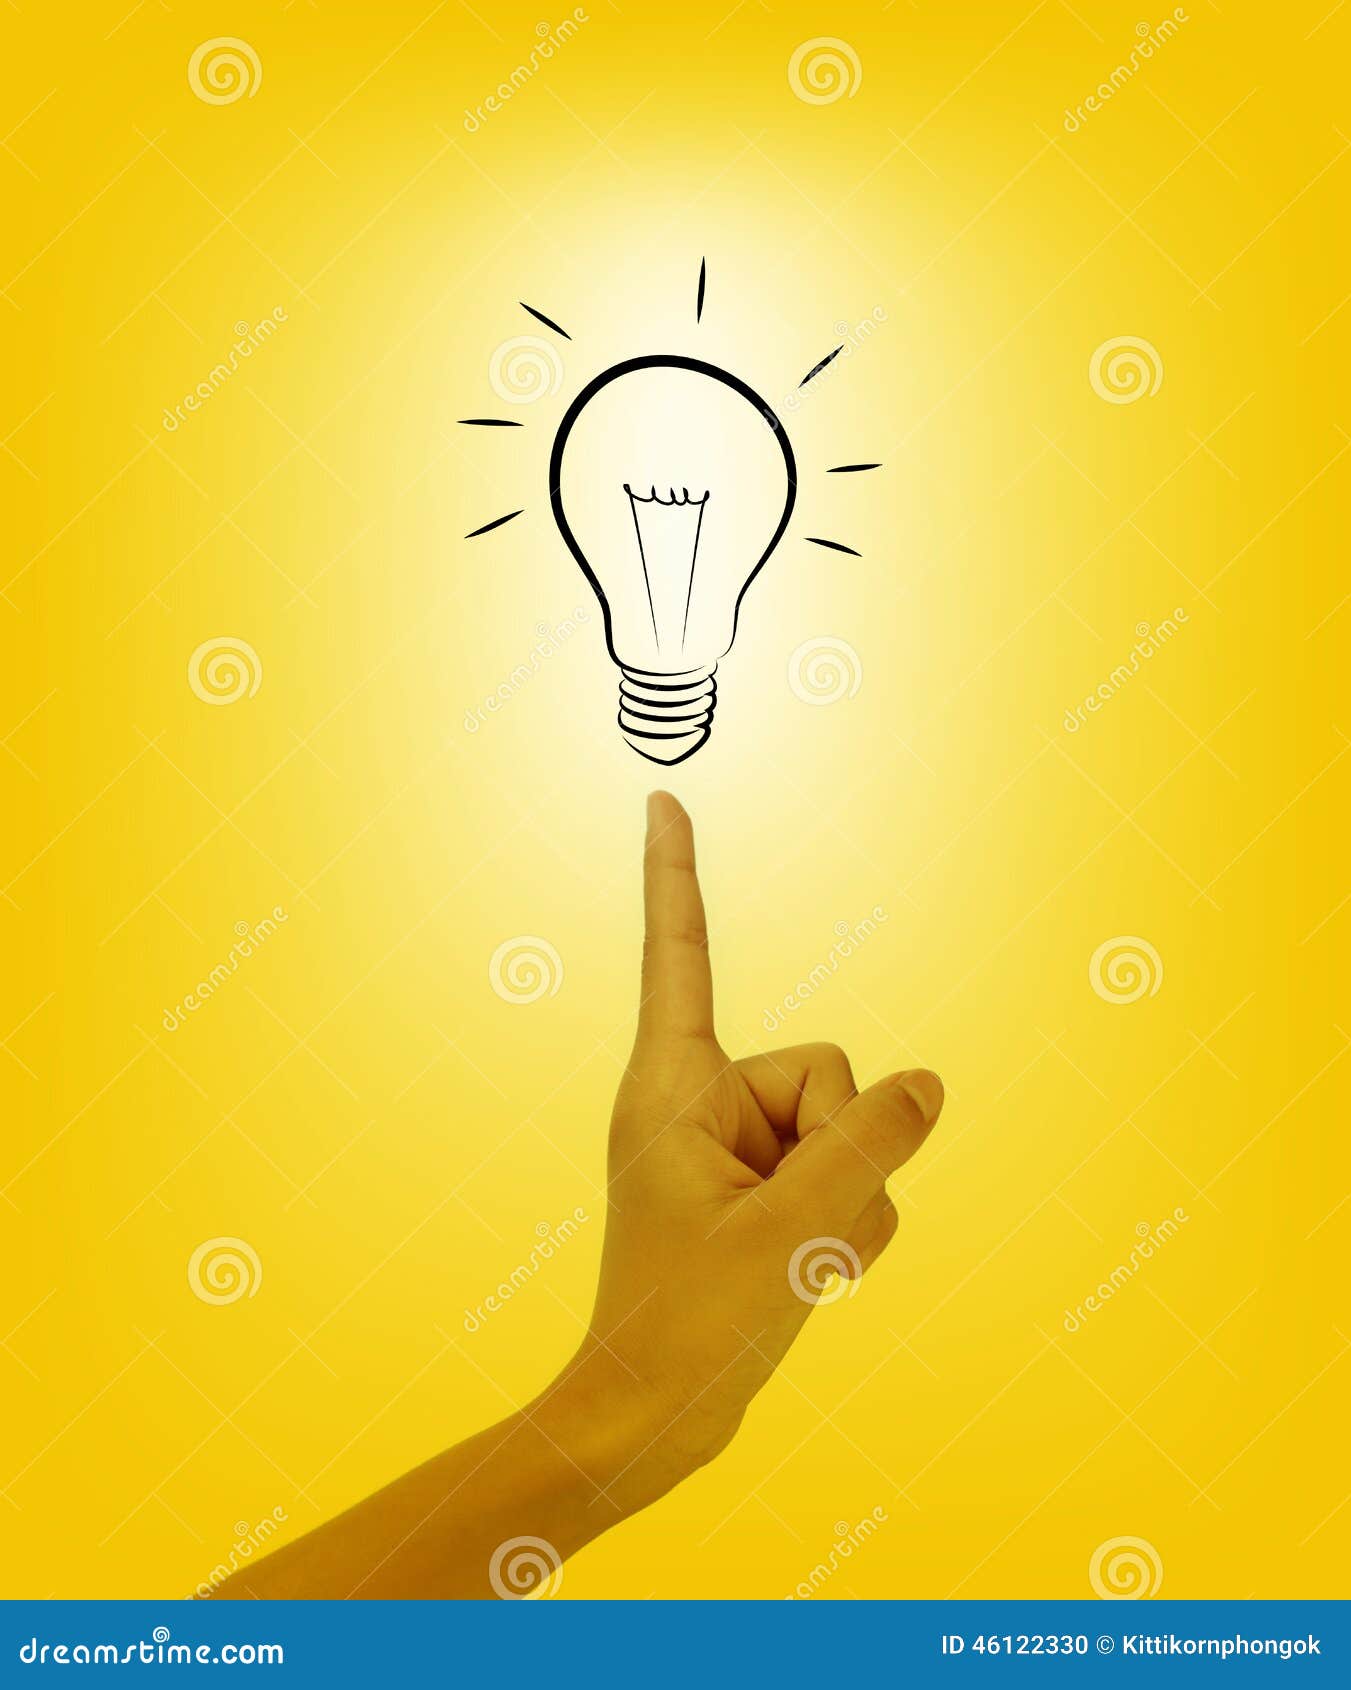 bulb light on women fingertip